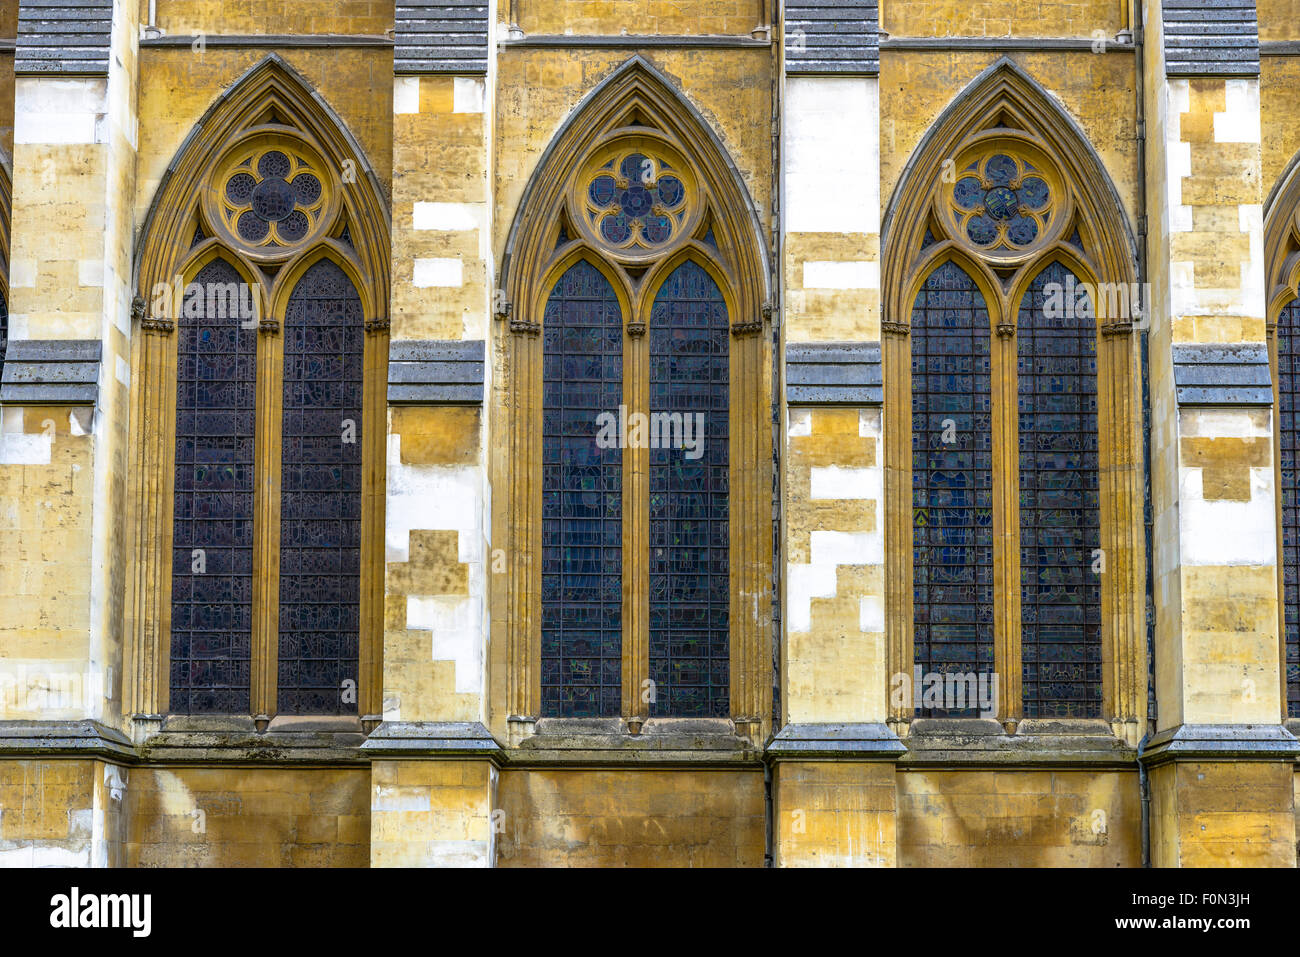 Dettagli architettonici dell'Abbazia di Westminster a Londra, Regno Unito Foto Stock